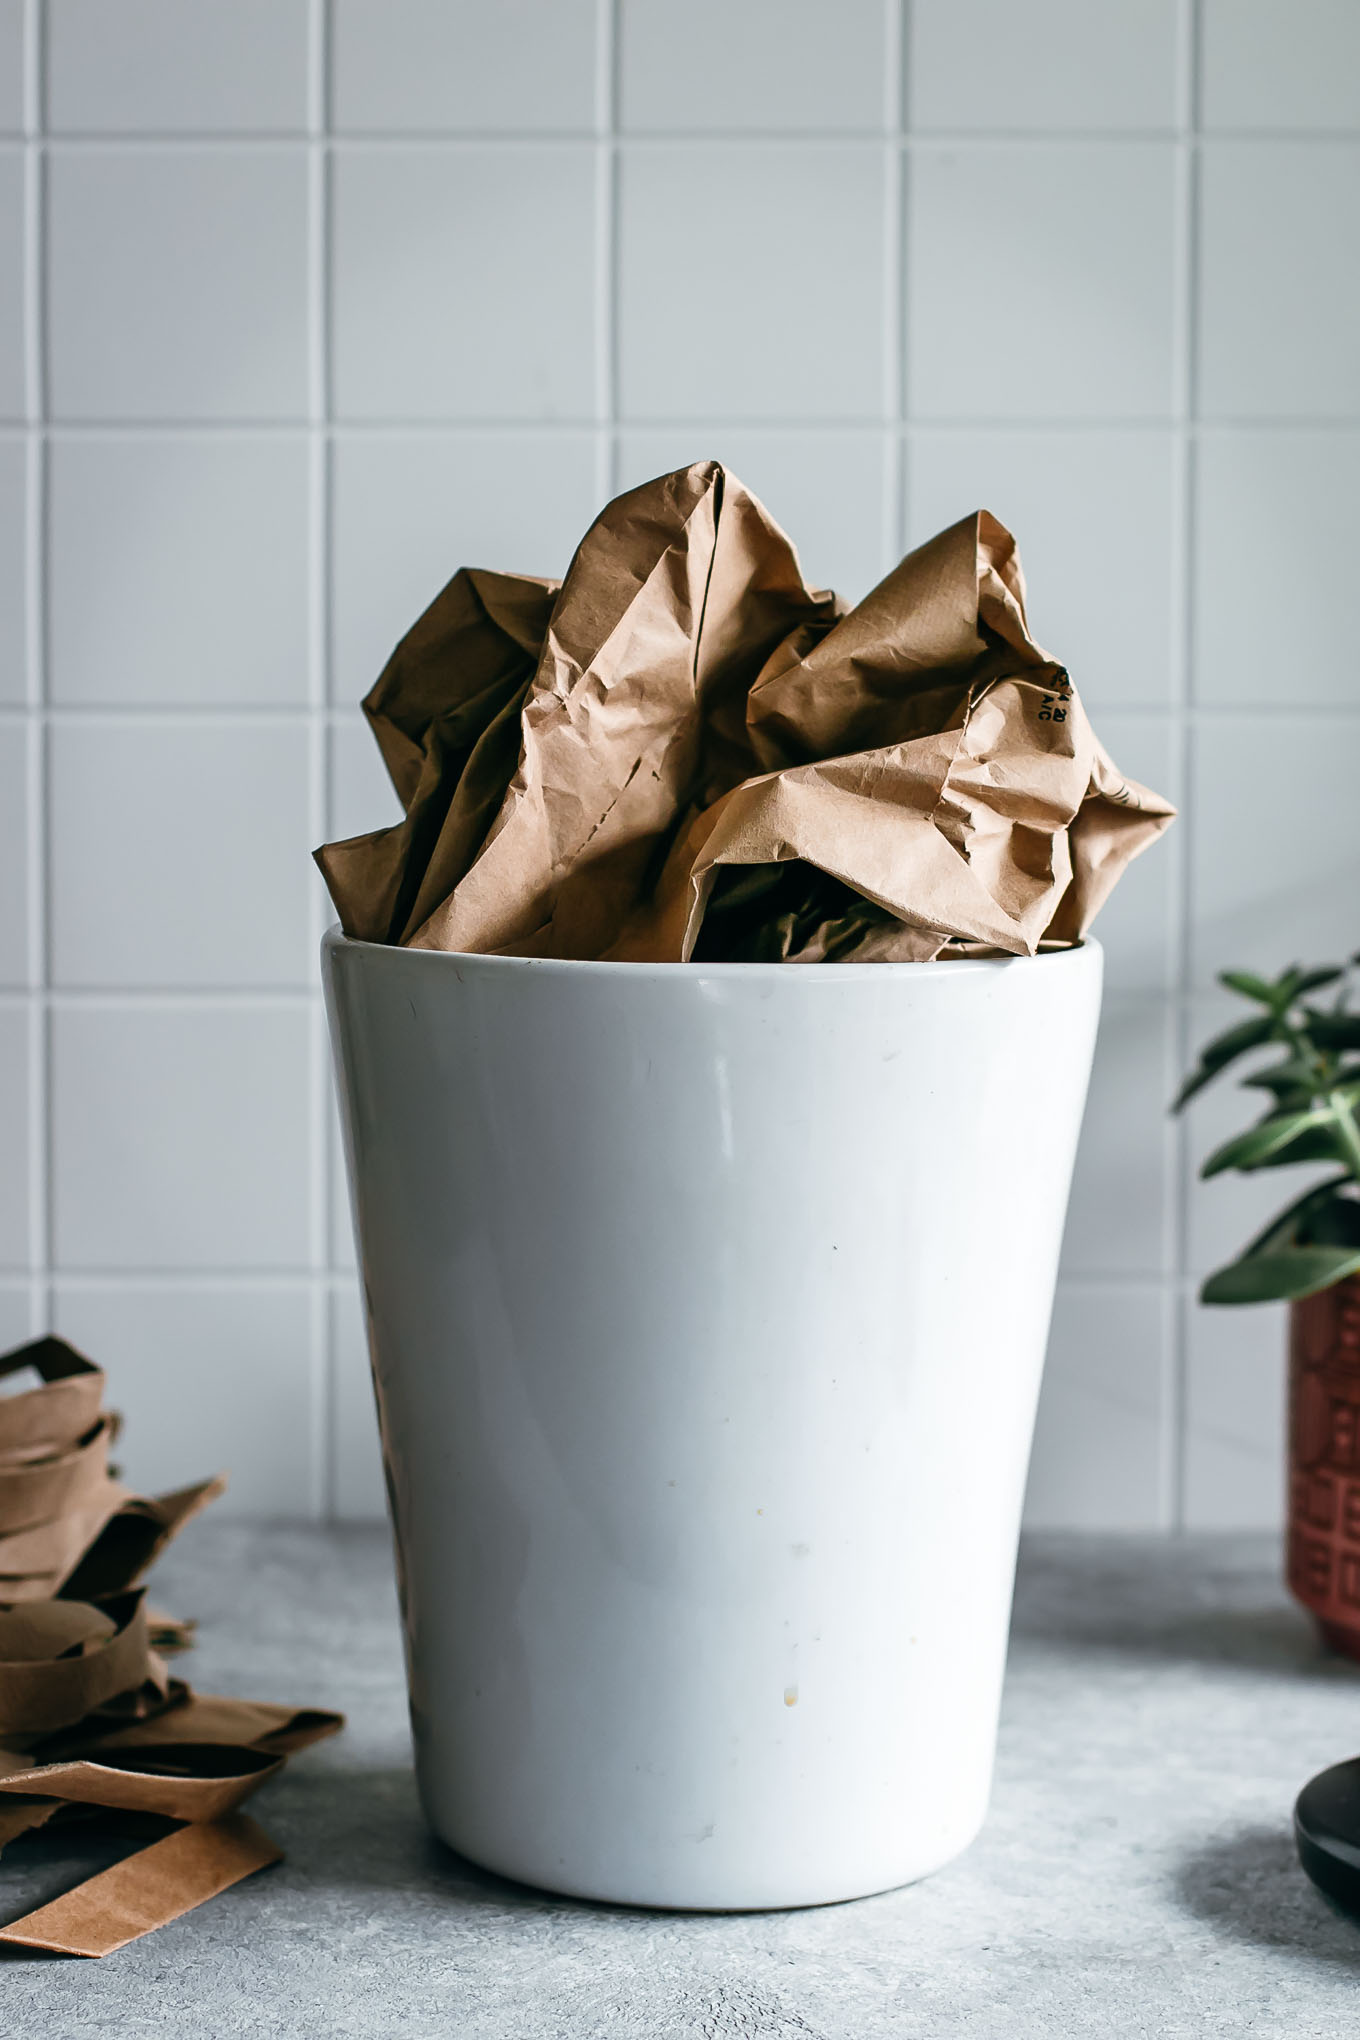 crumpled paper bag in a white ceramic bin on a countertop